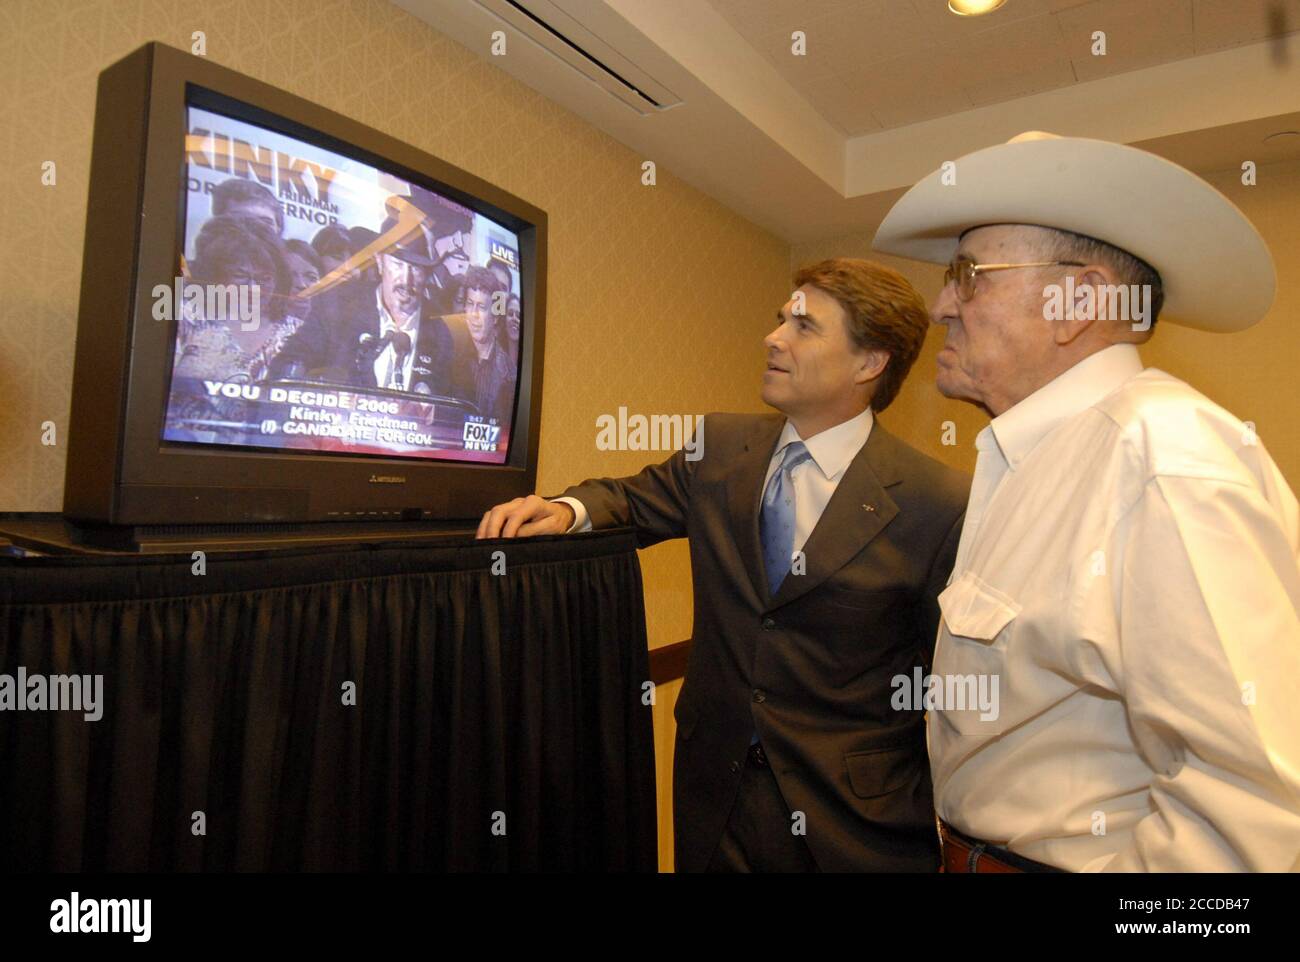 Austin, Texas 7 novembre 2006: Le gouverneur du Texas Rick Perry (l) et son père Ray (r) regardent le challenger Kinky Friedman concéder la course du gouverneur à Perry à la télévision. ©Bob Daemmrich Banque D'Images